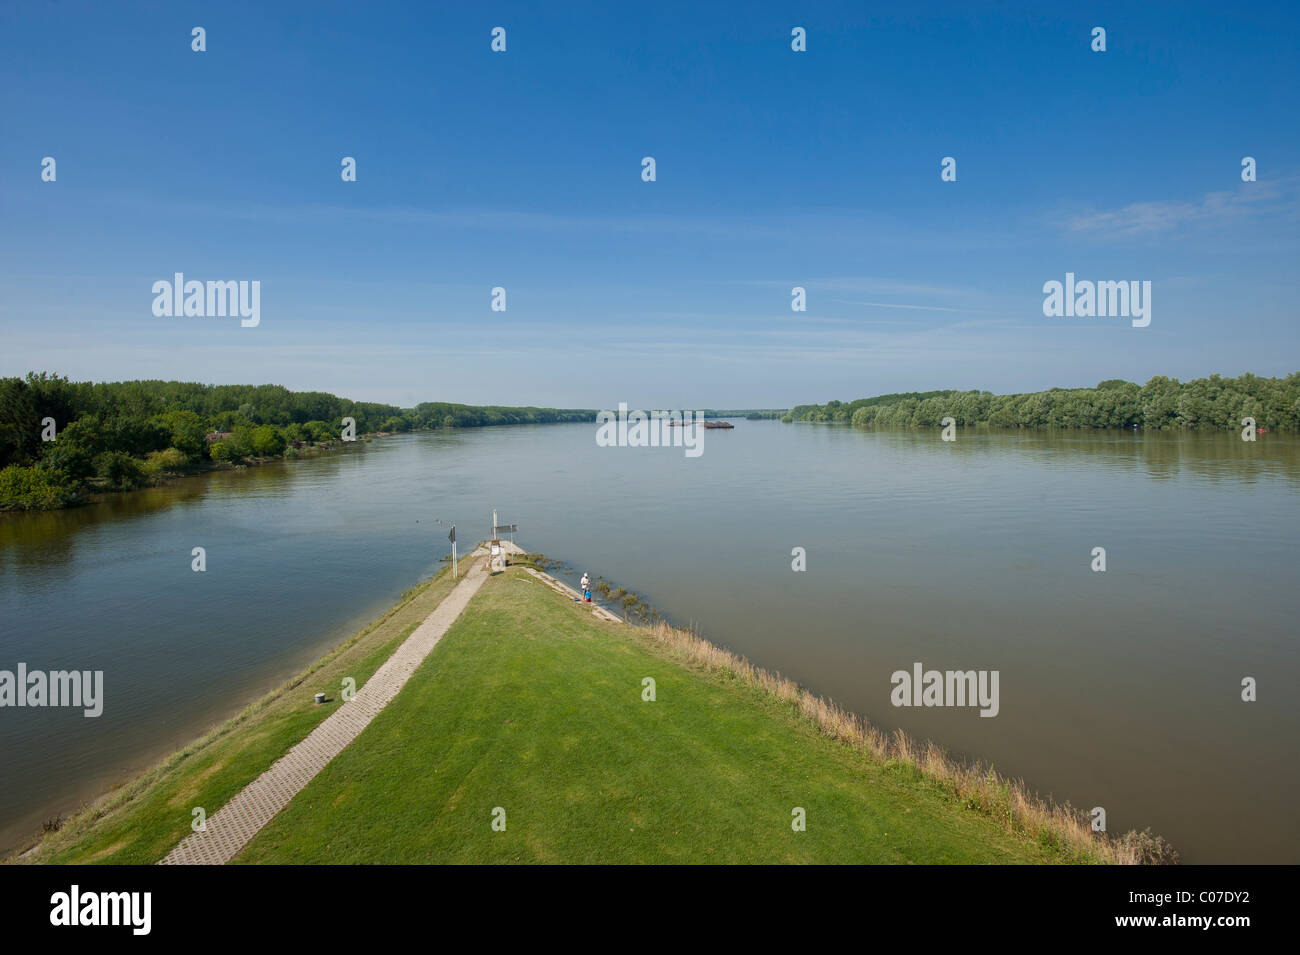 of Danube river, near Baja, Stock Photo - Alamy